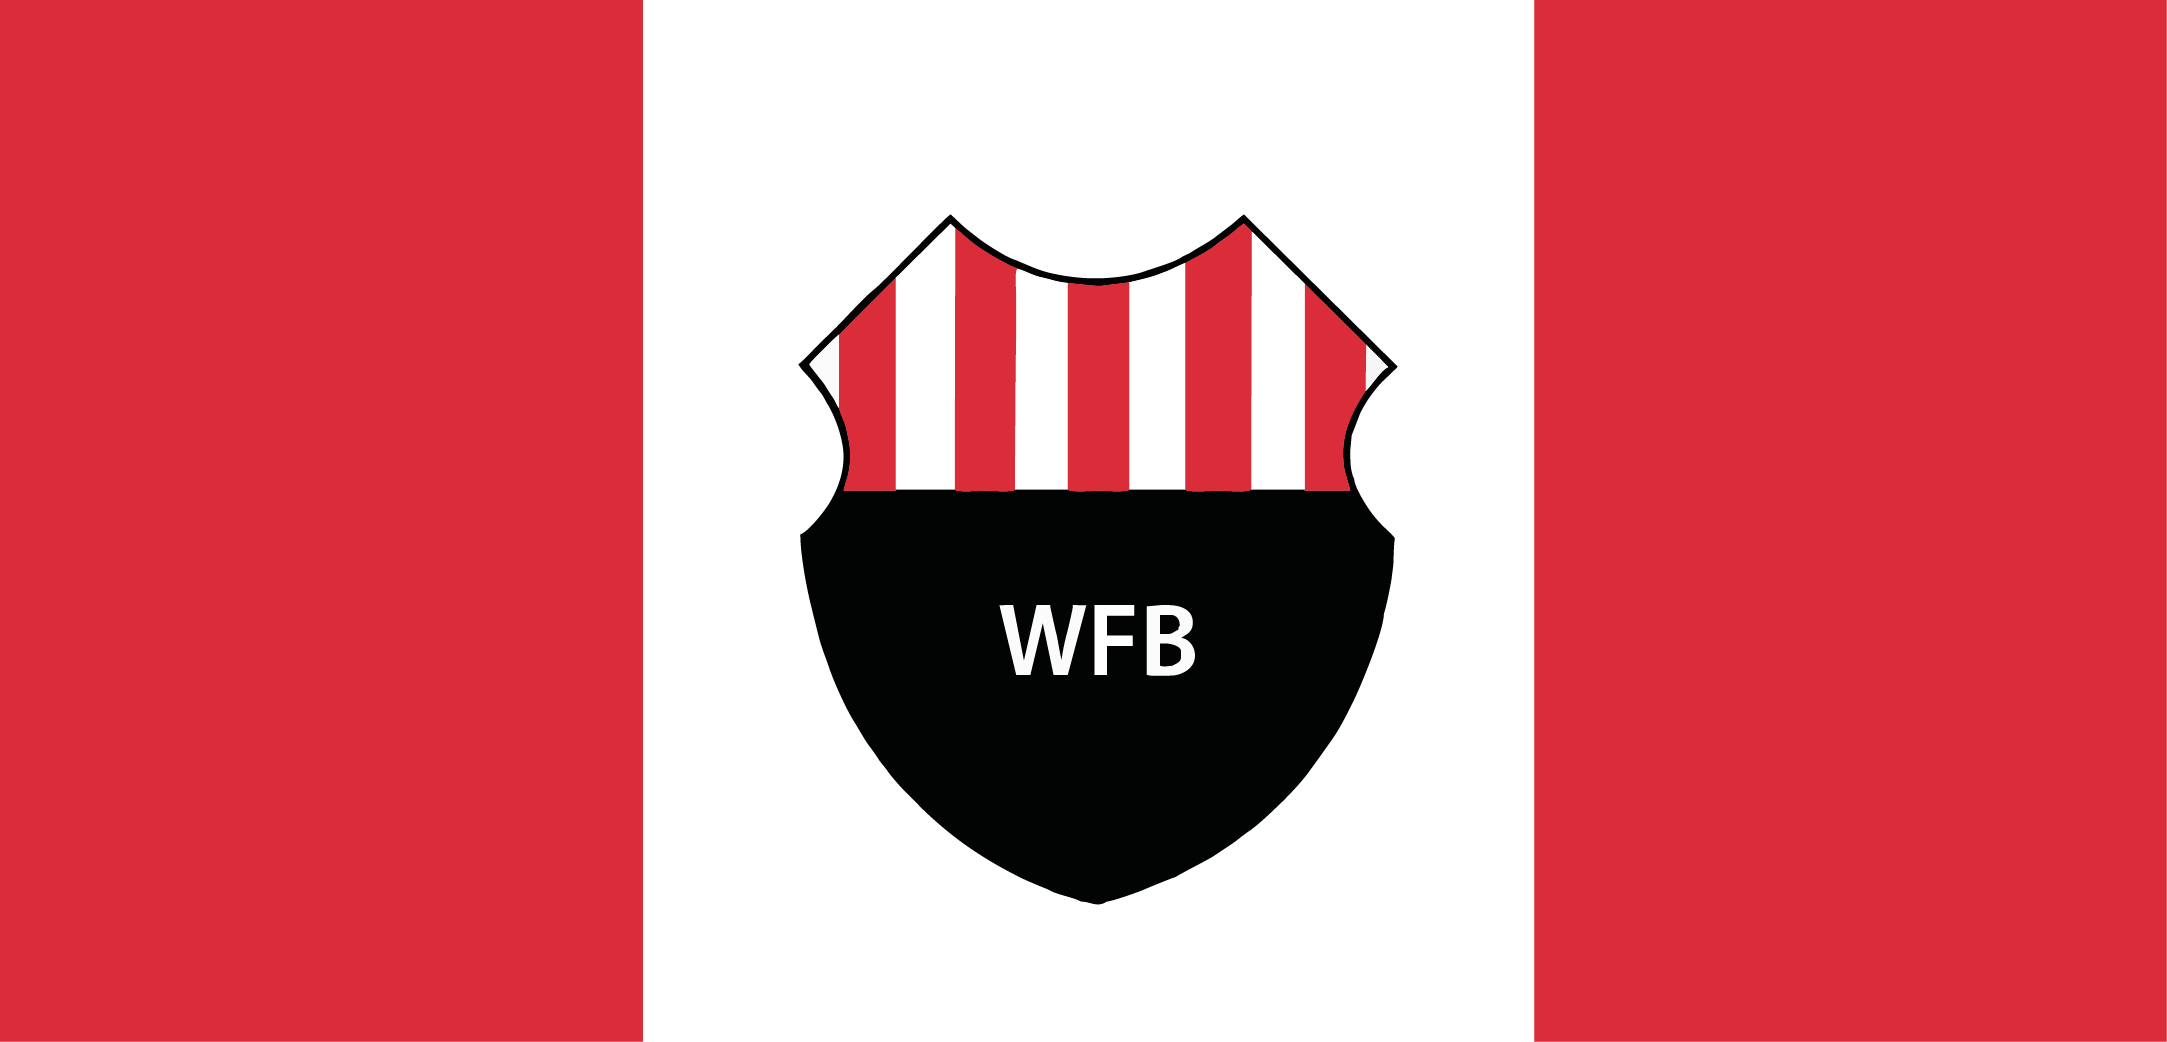 Webshop WFB